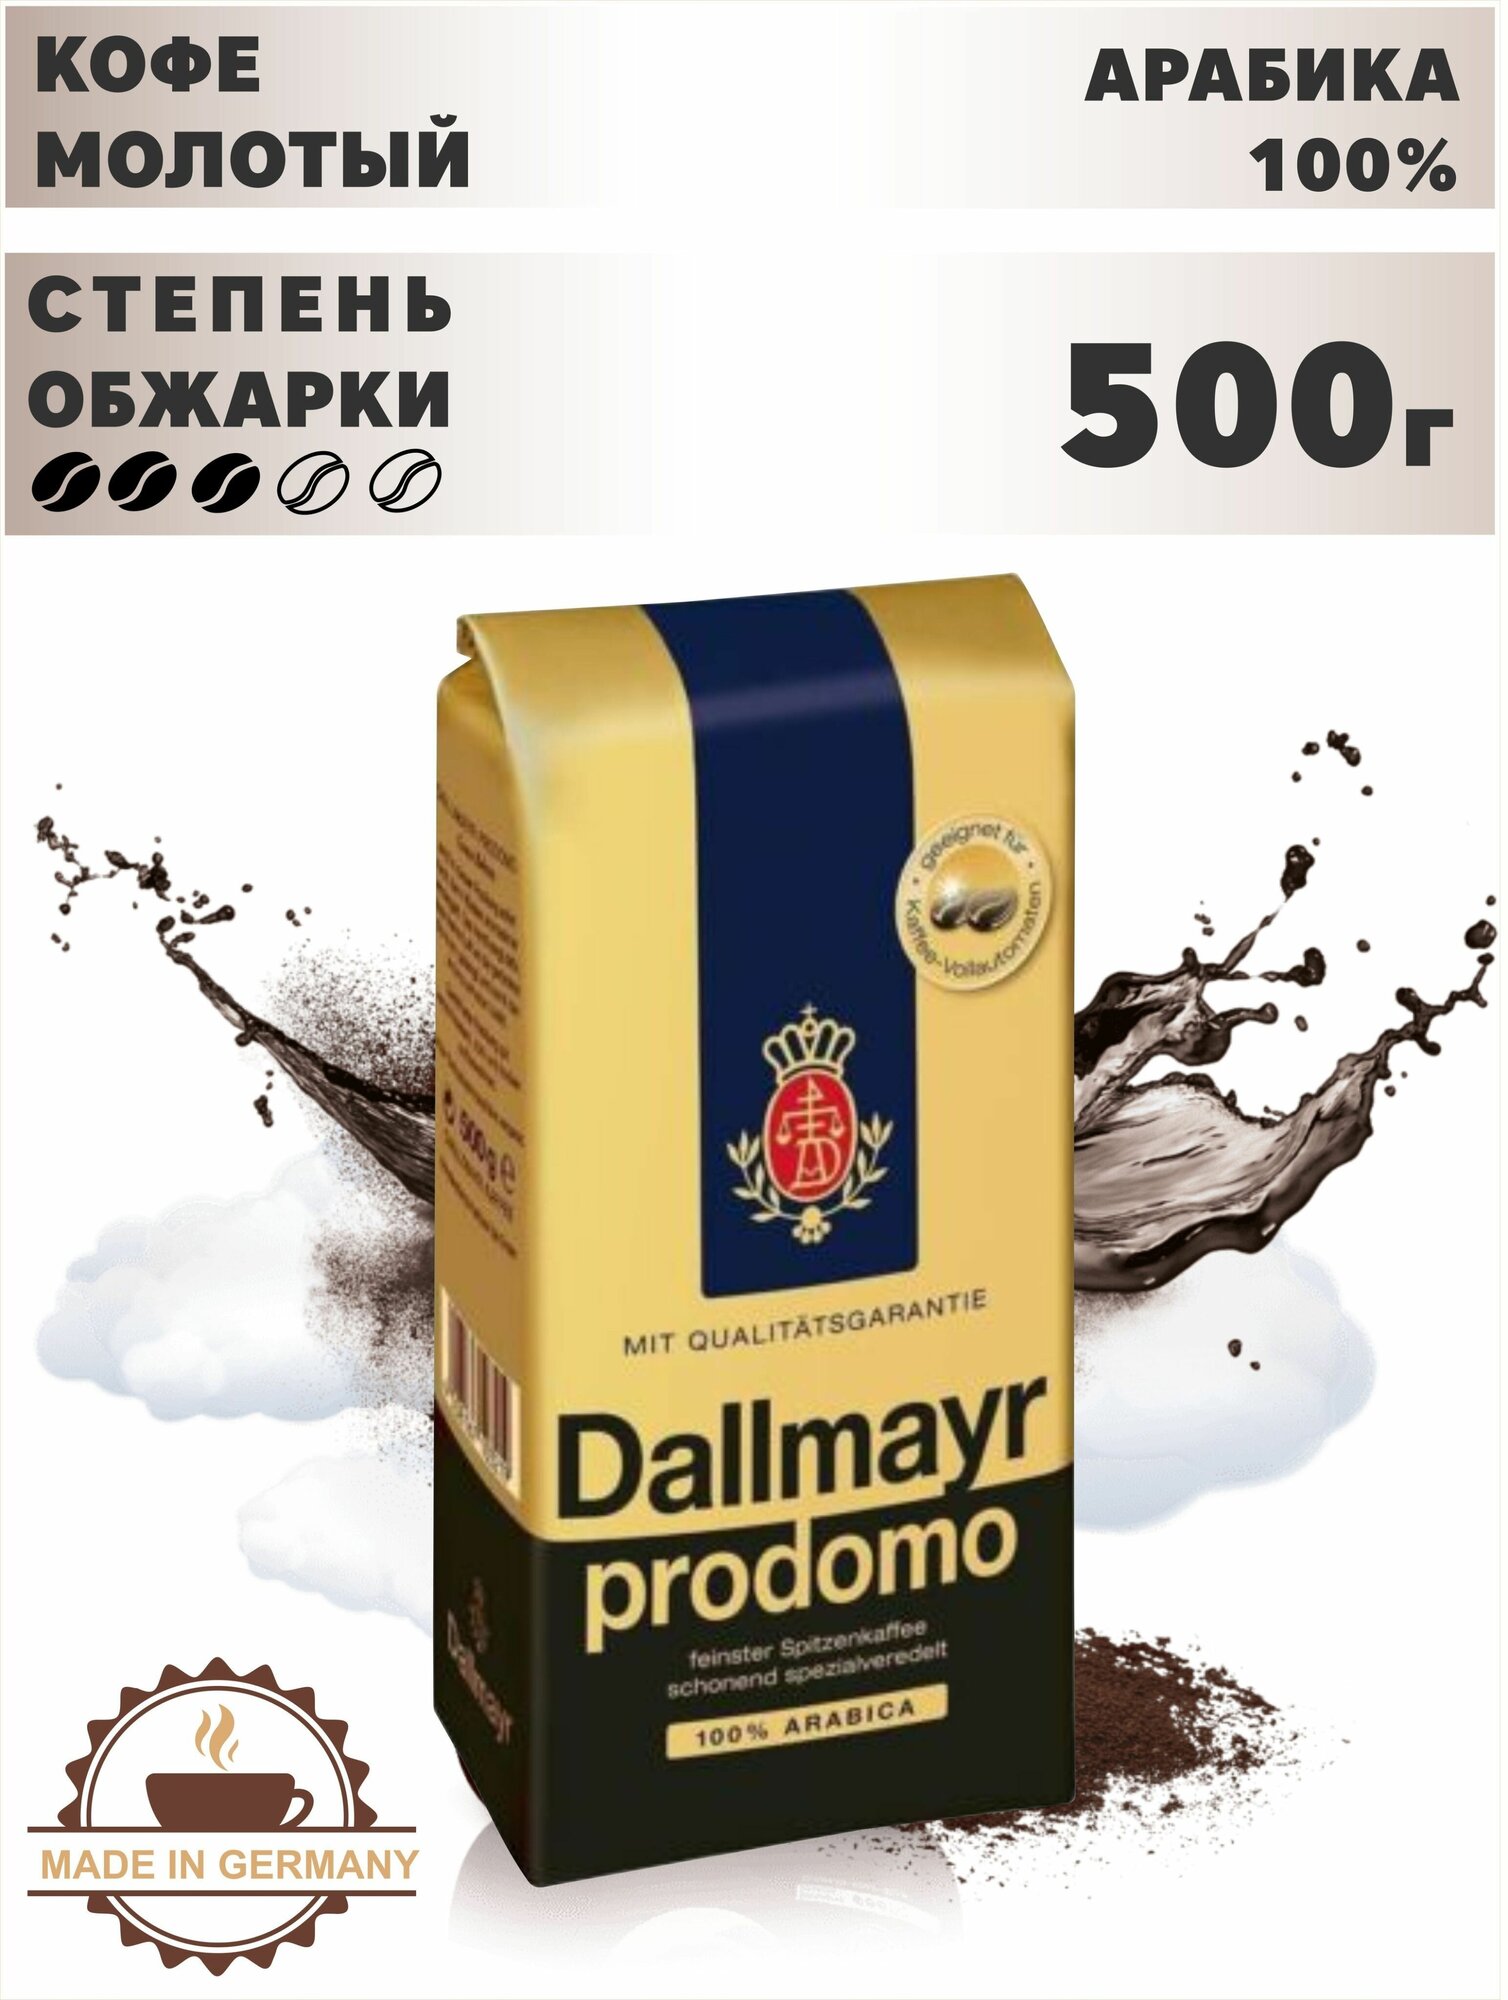 Dallmayr Prodomo 500г кофе молотый 100% арабика в/у (103714) — купить в  интернет-магазине по низкой цене на Яндекс Маркете